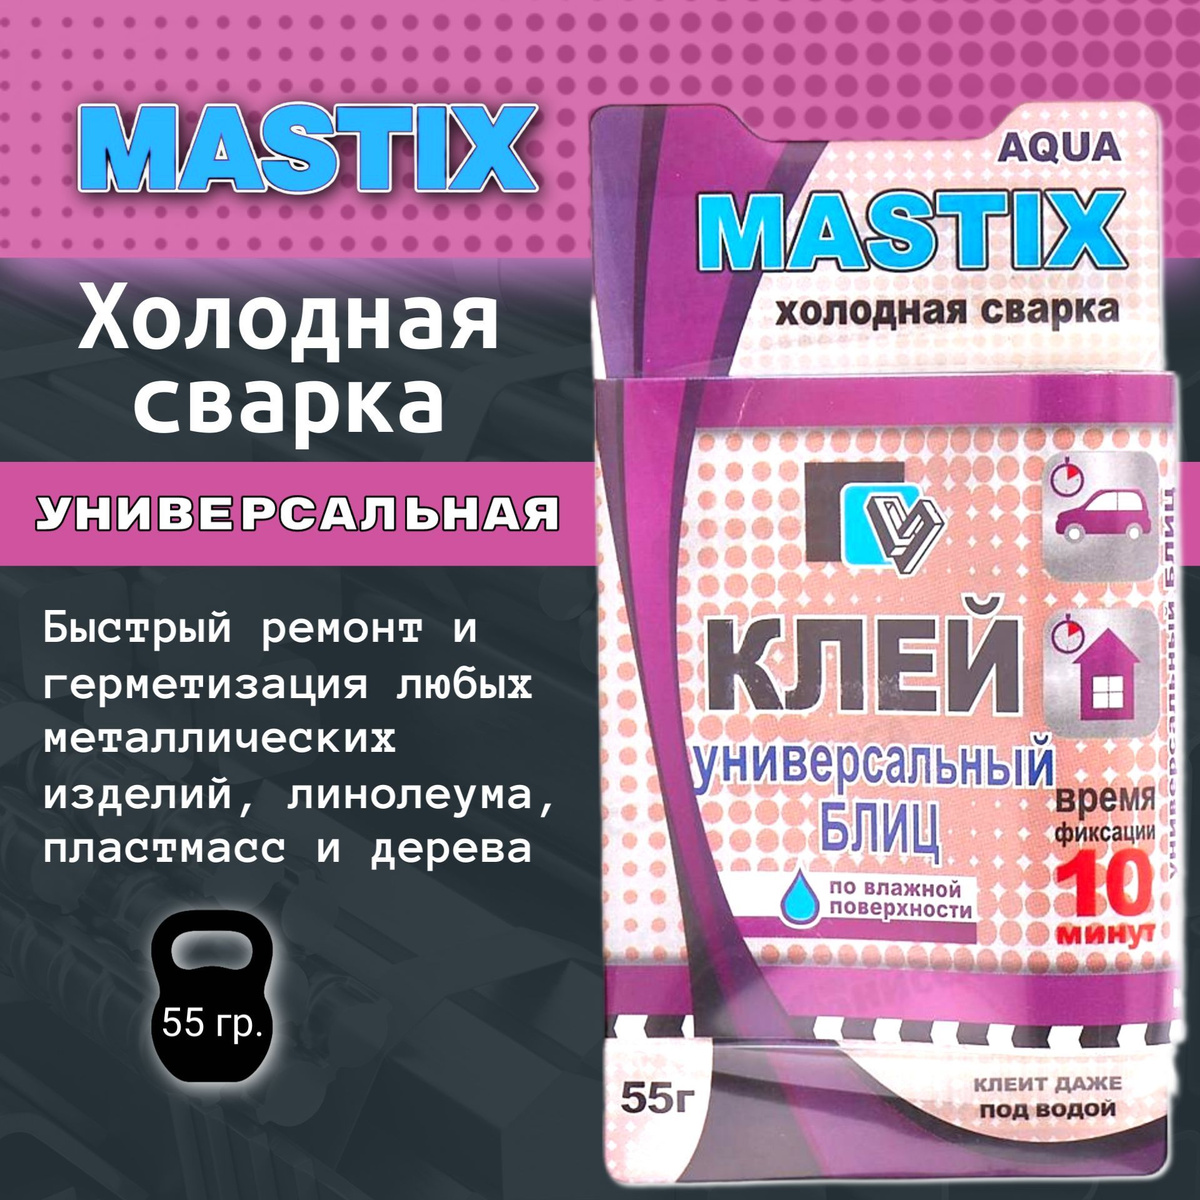 Здесь должно быть изображение карточки "1шт. Холодная сварка Mastix универсальная БЛИЦ"